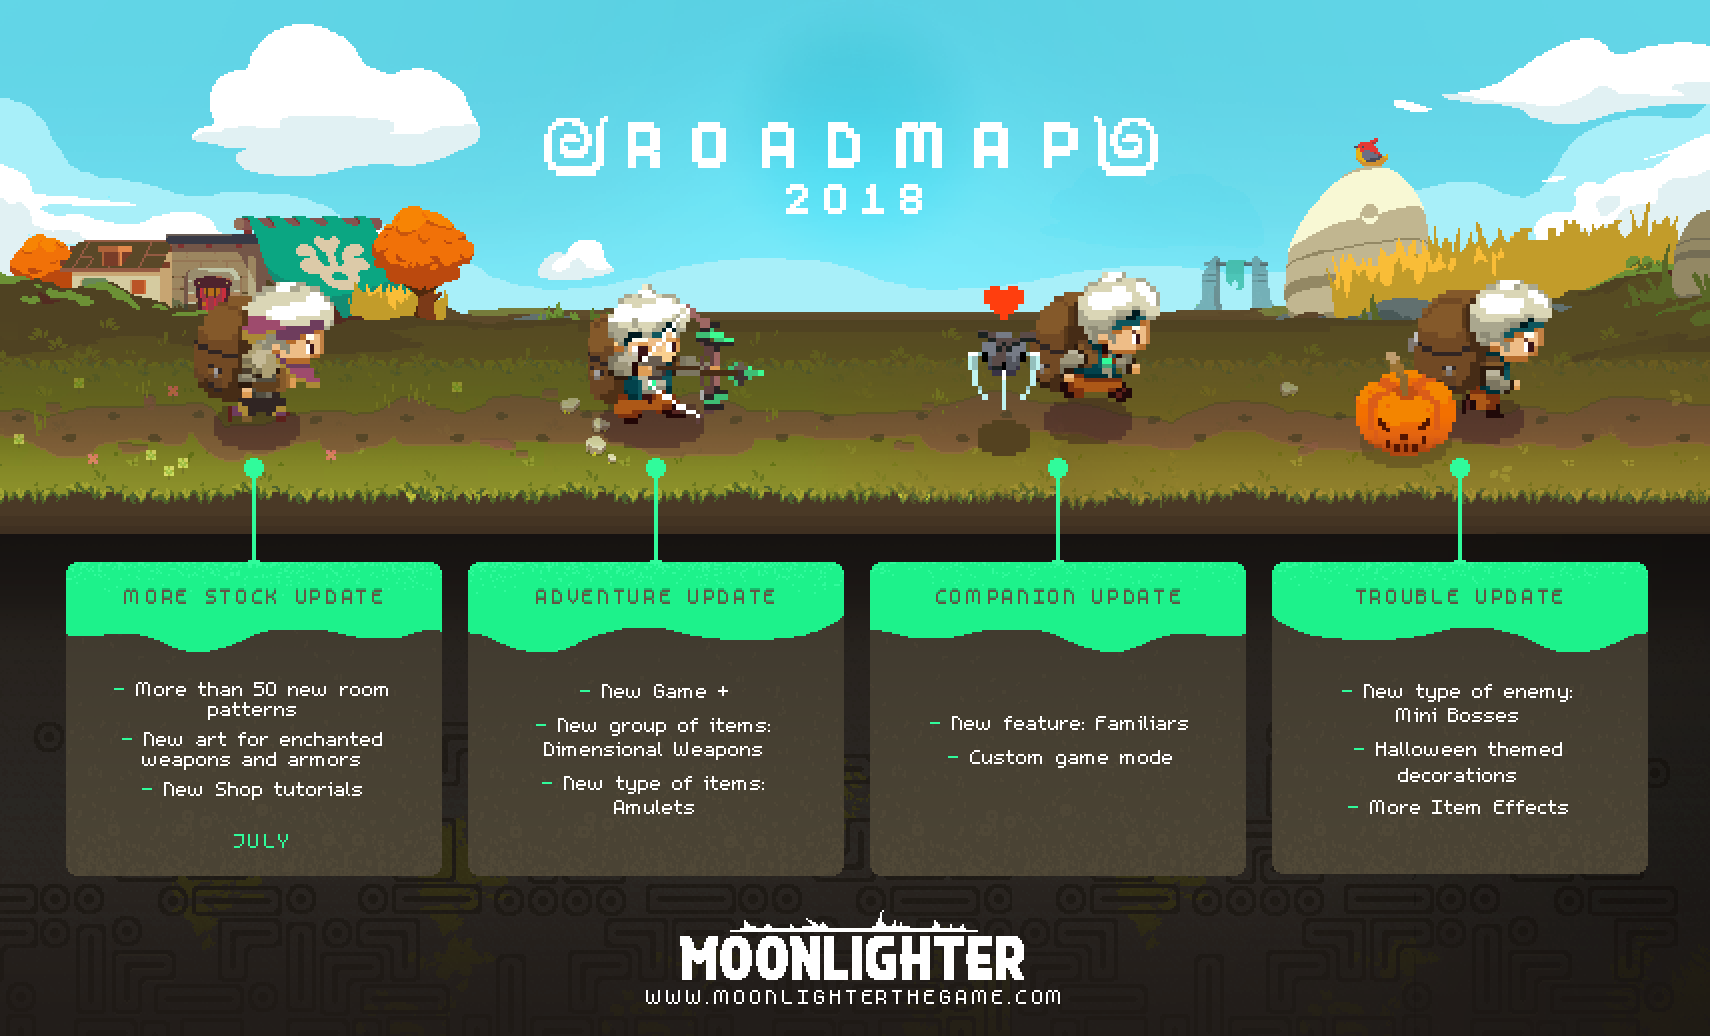 Moonlighter 2018 Roadmap